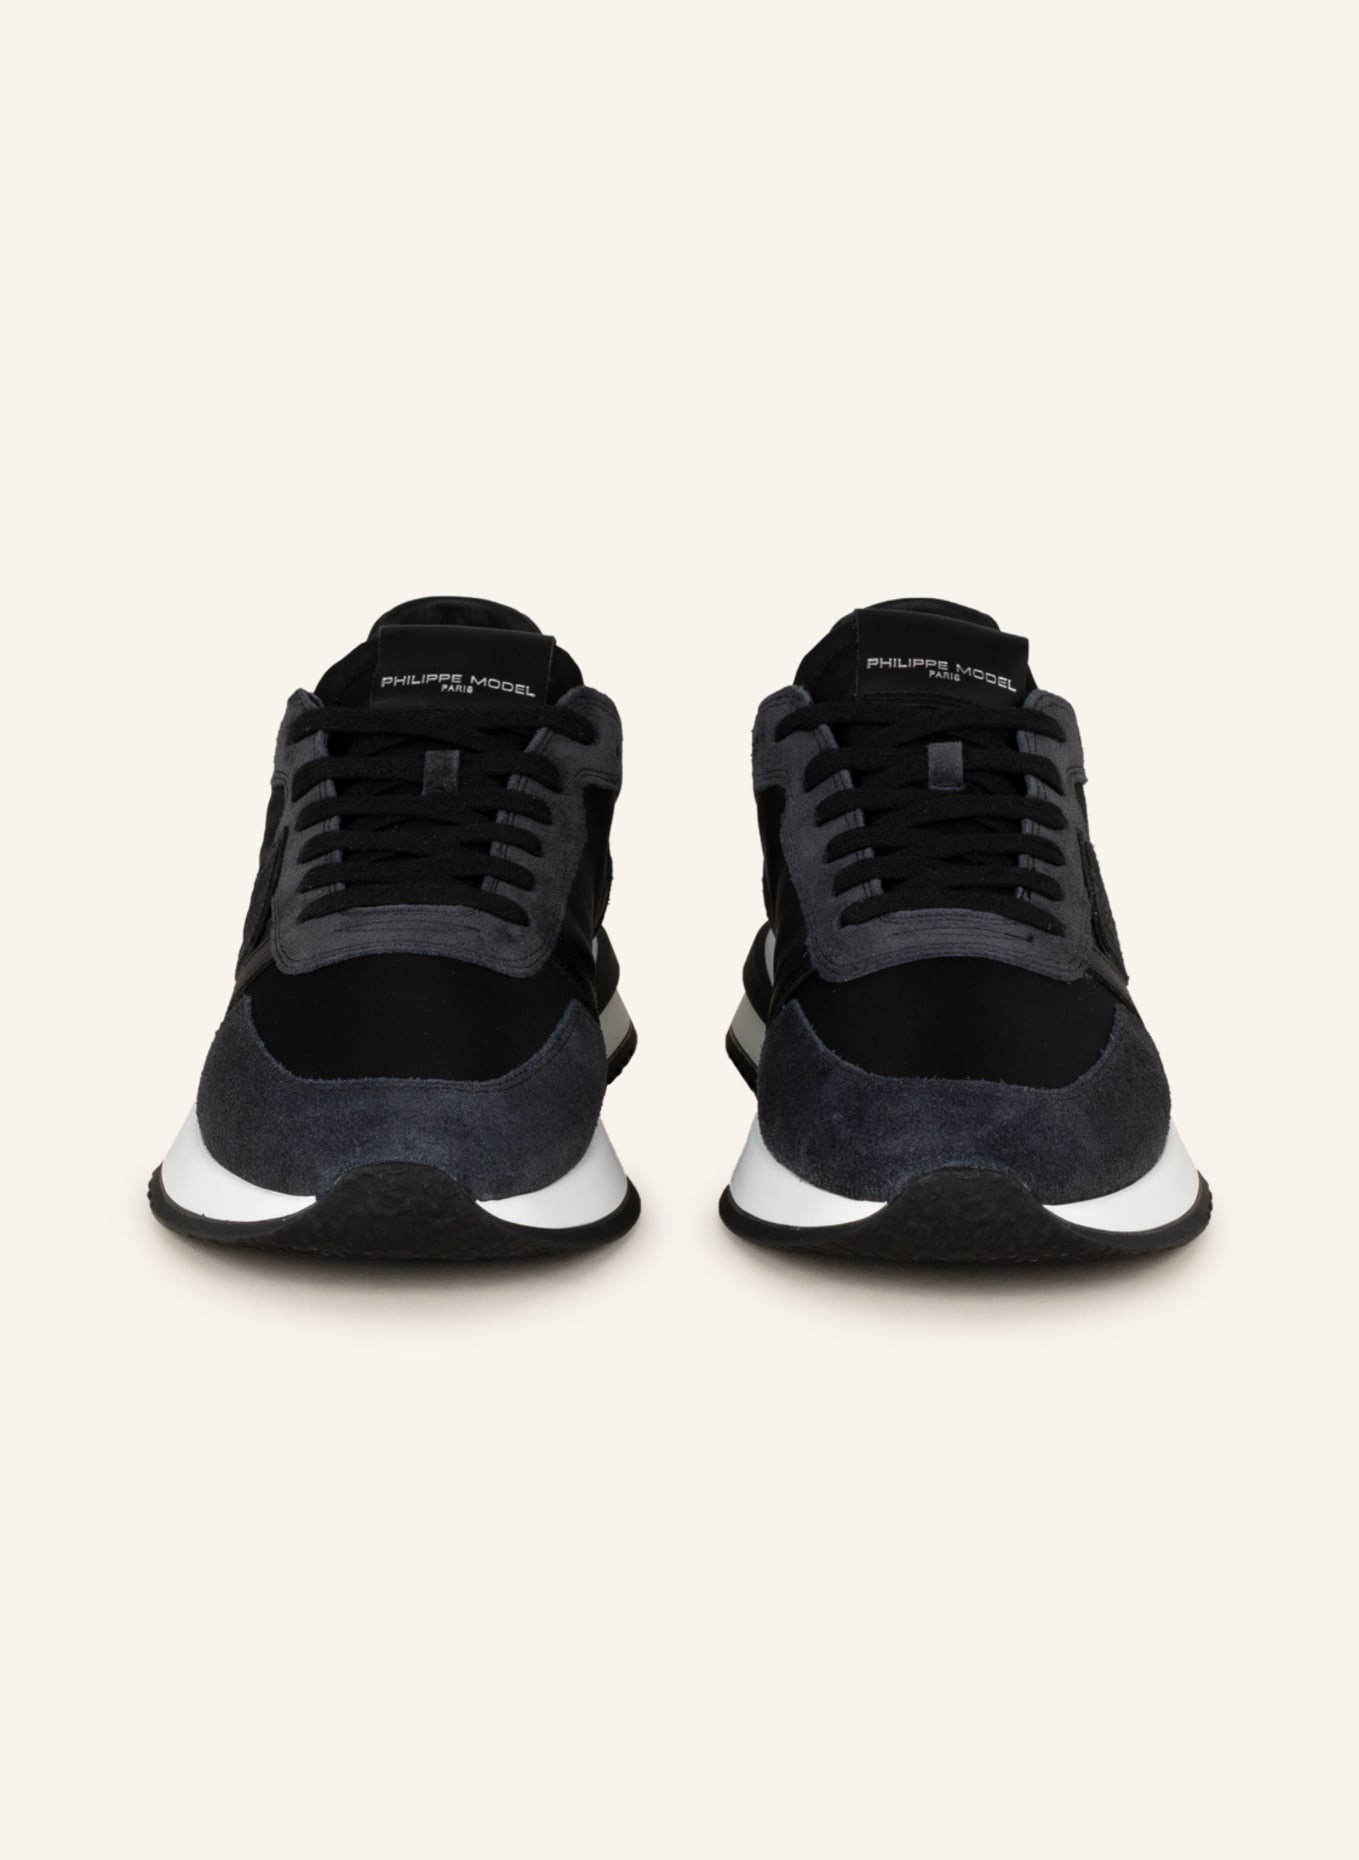 Philippe Model Sneakers Black for Men | Lyst Australia